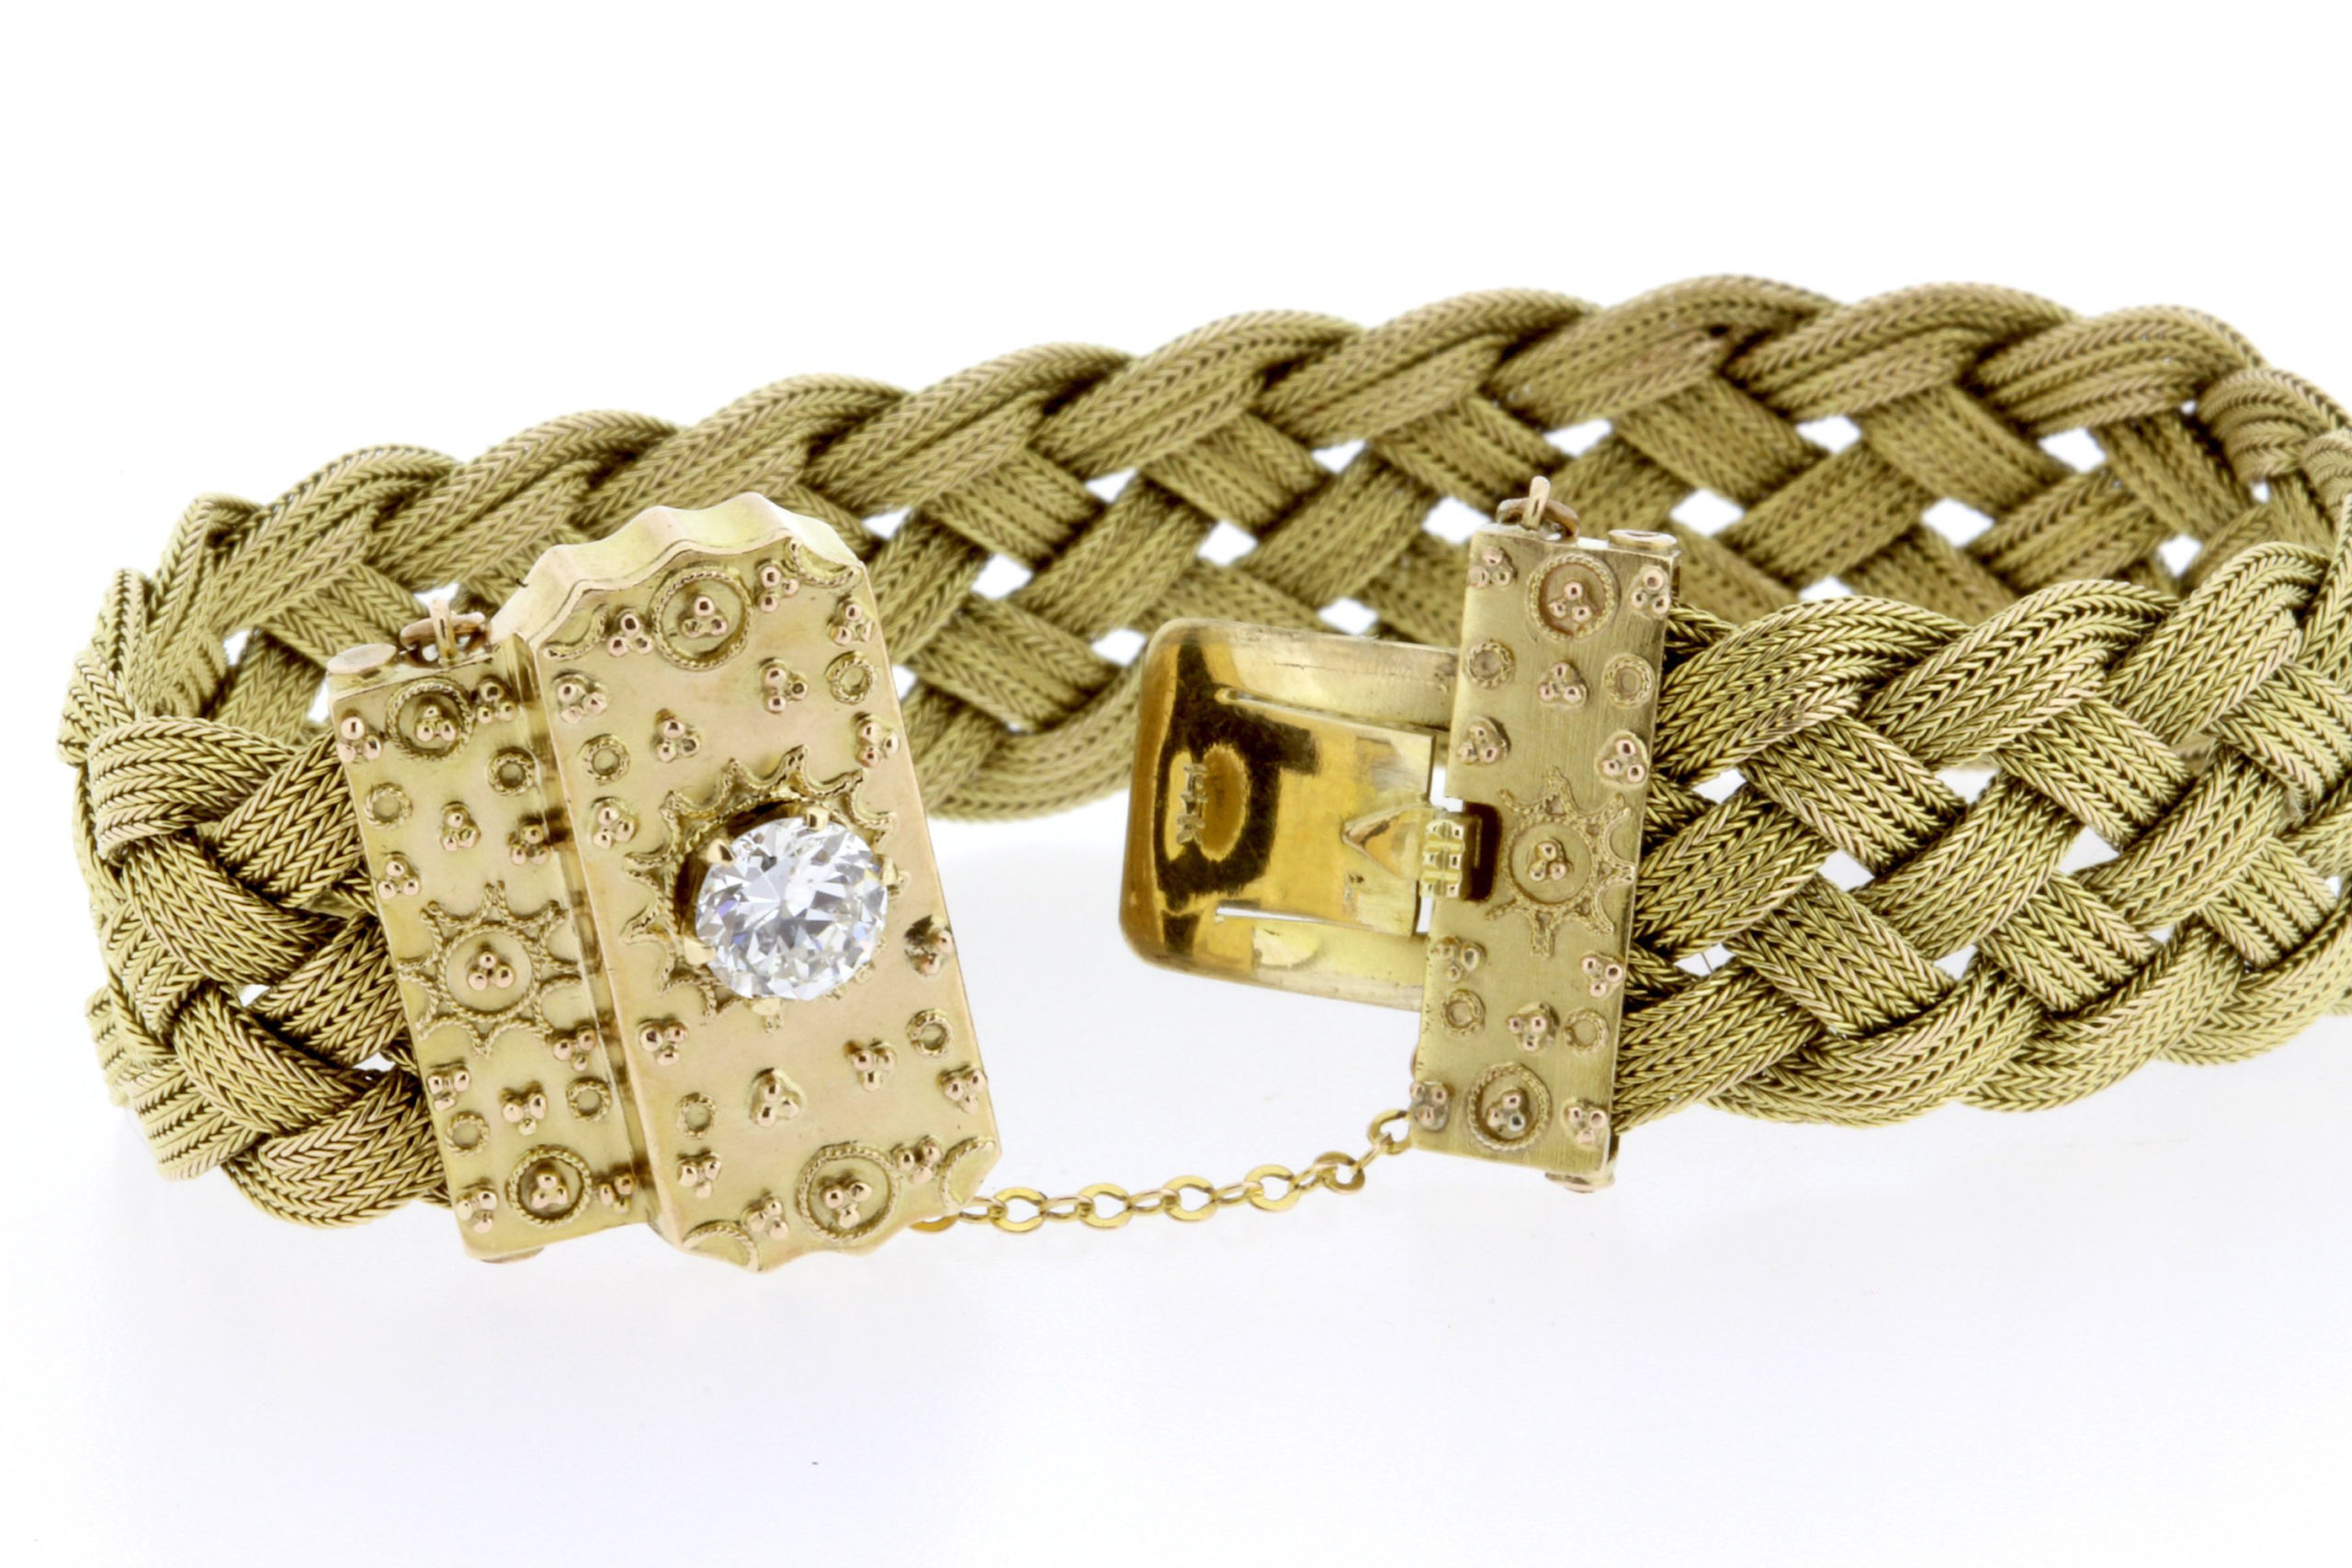 9ct Gold Wide Woven Mesh Bracelet - kingsestate